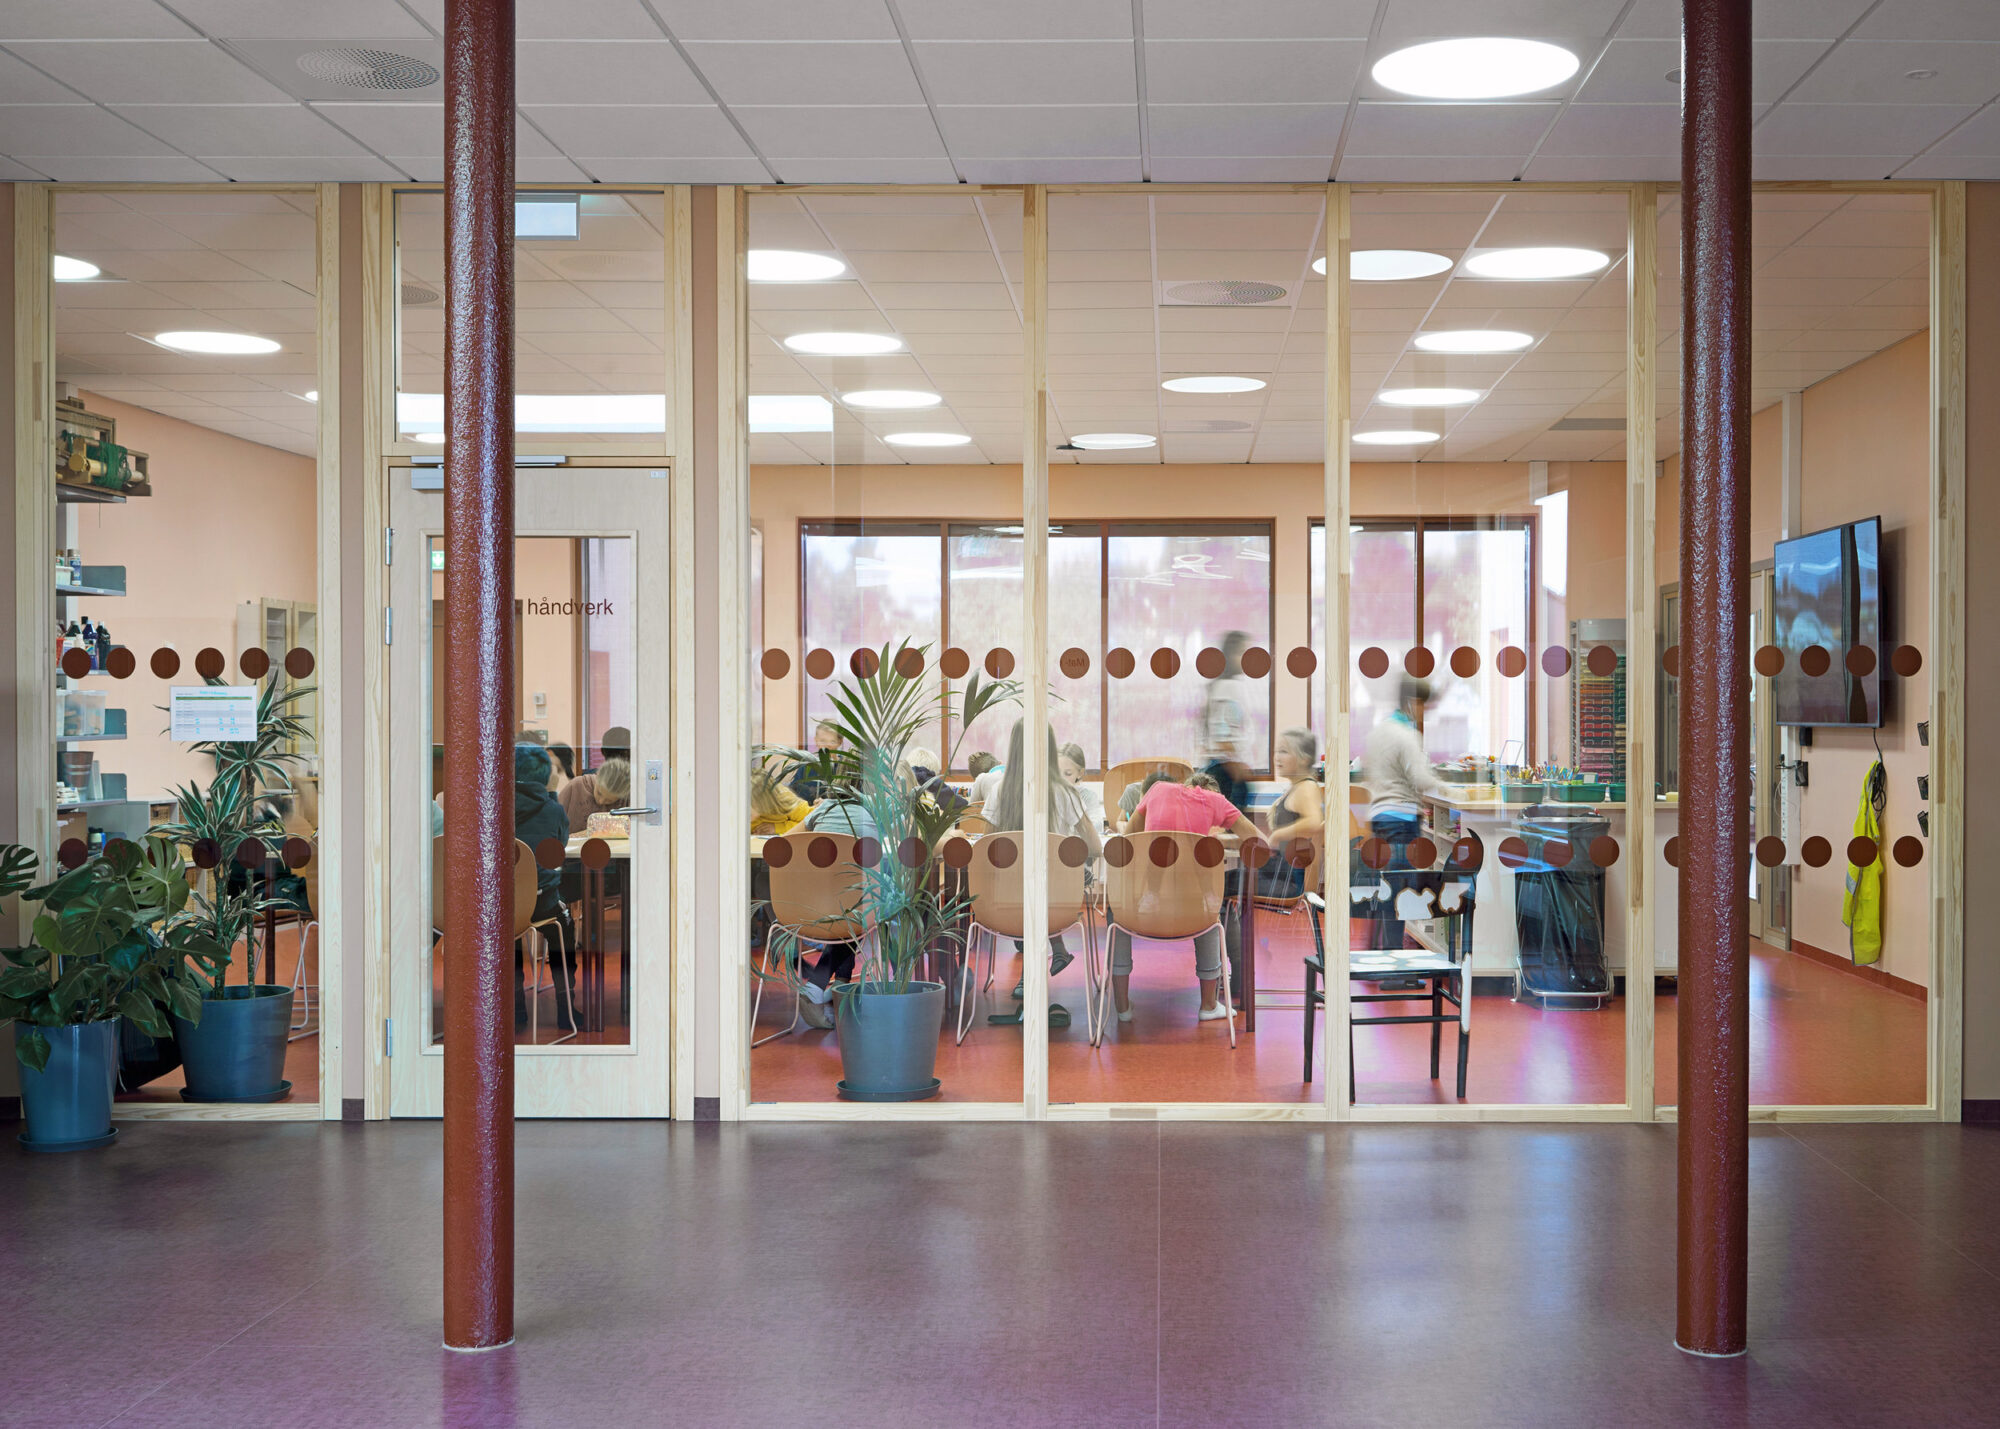 Kunst- og håndverksarealer ved Hebekk skole i Nordre Follo. Arkitekt og foto: Planforum Arkitekter